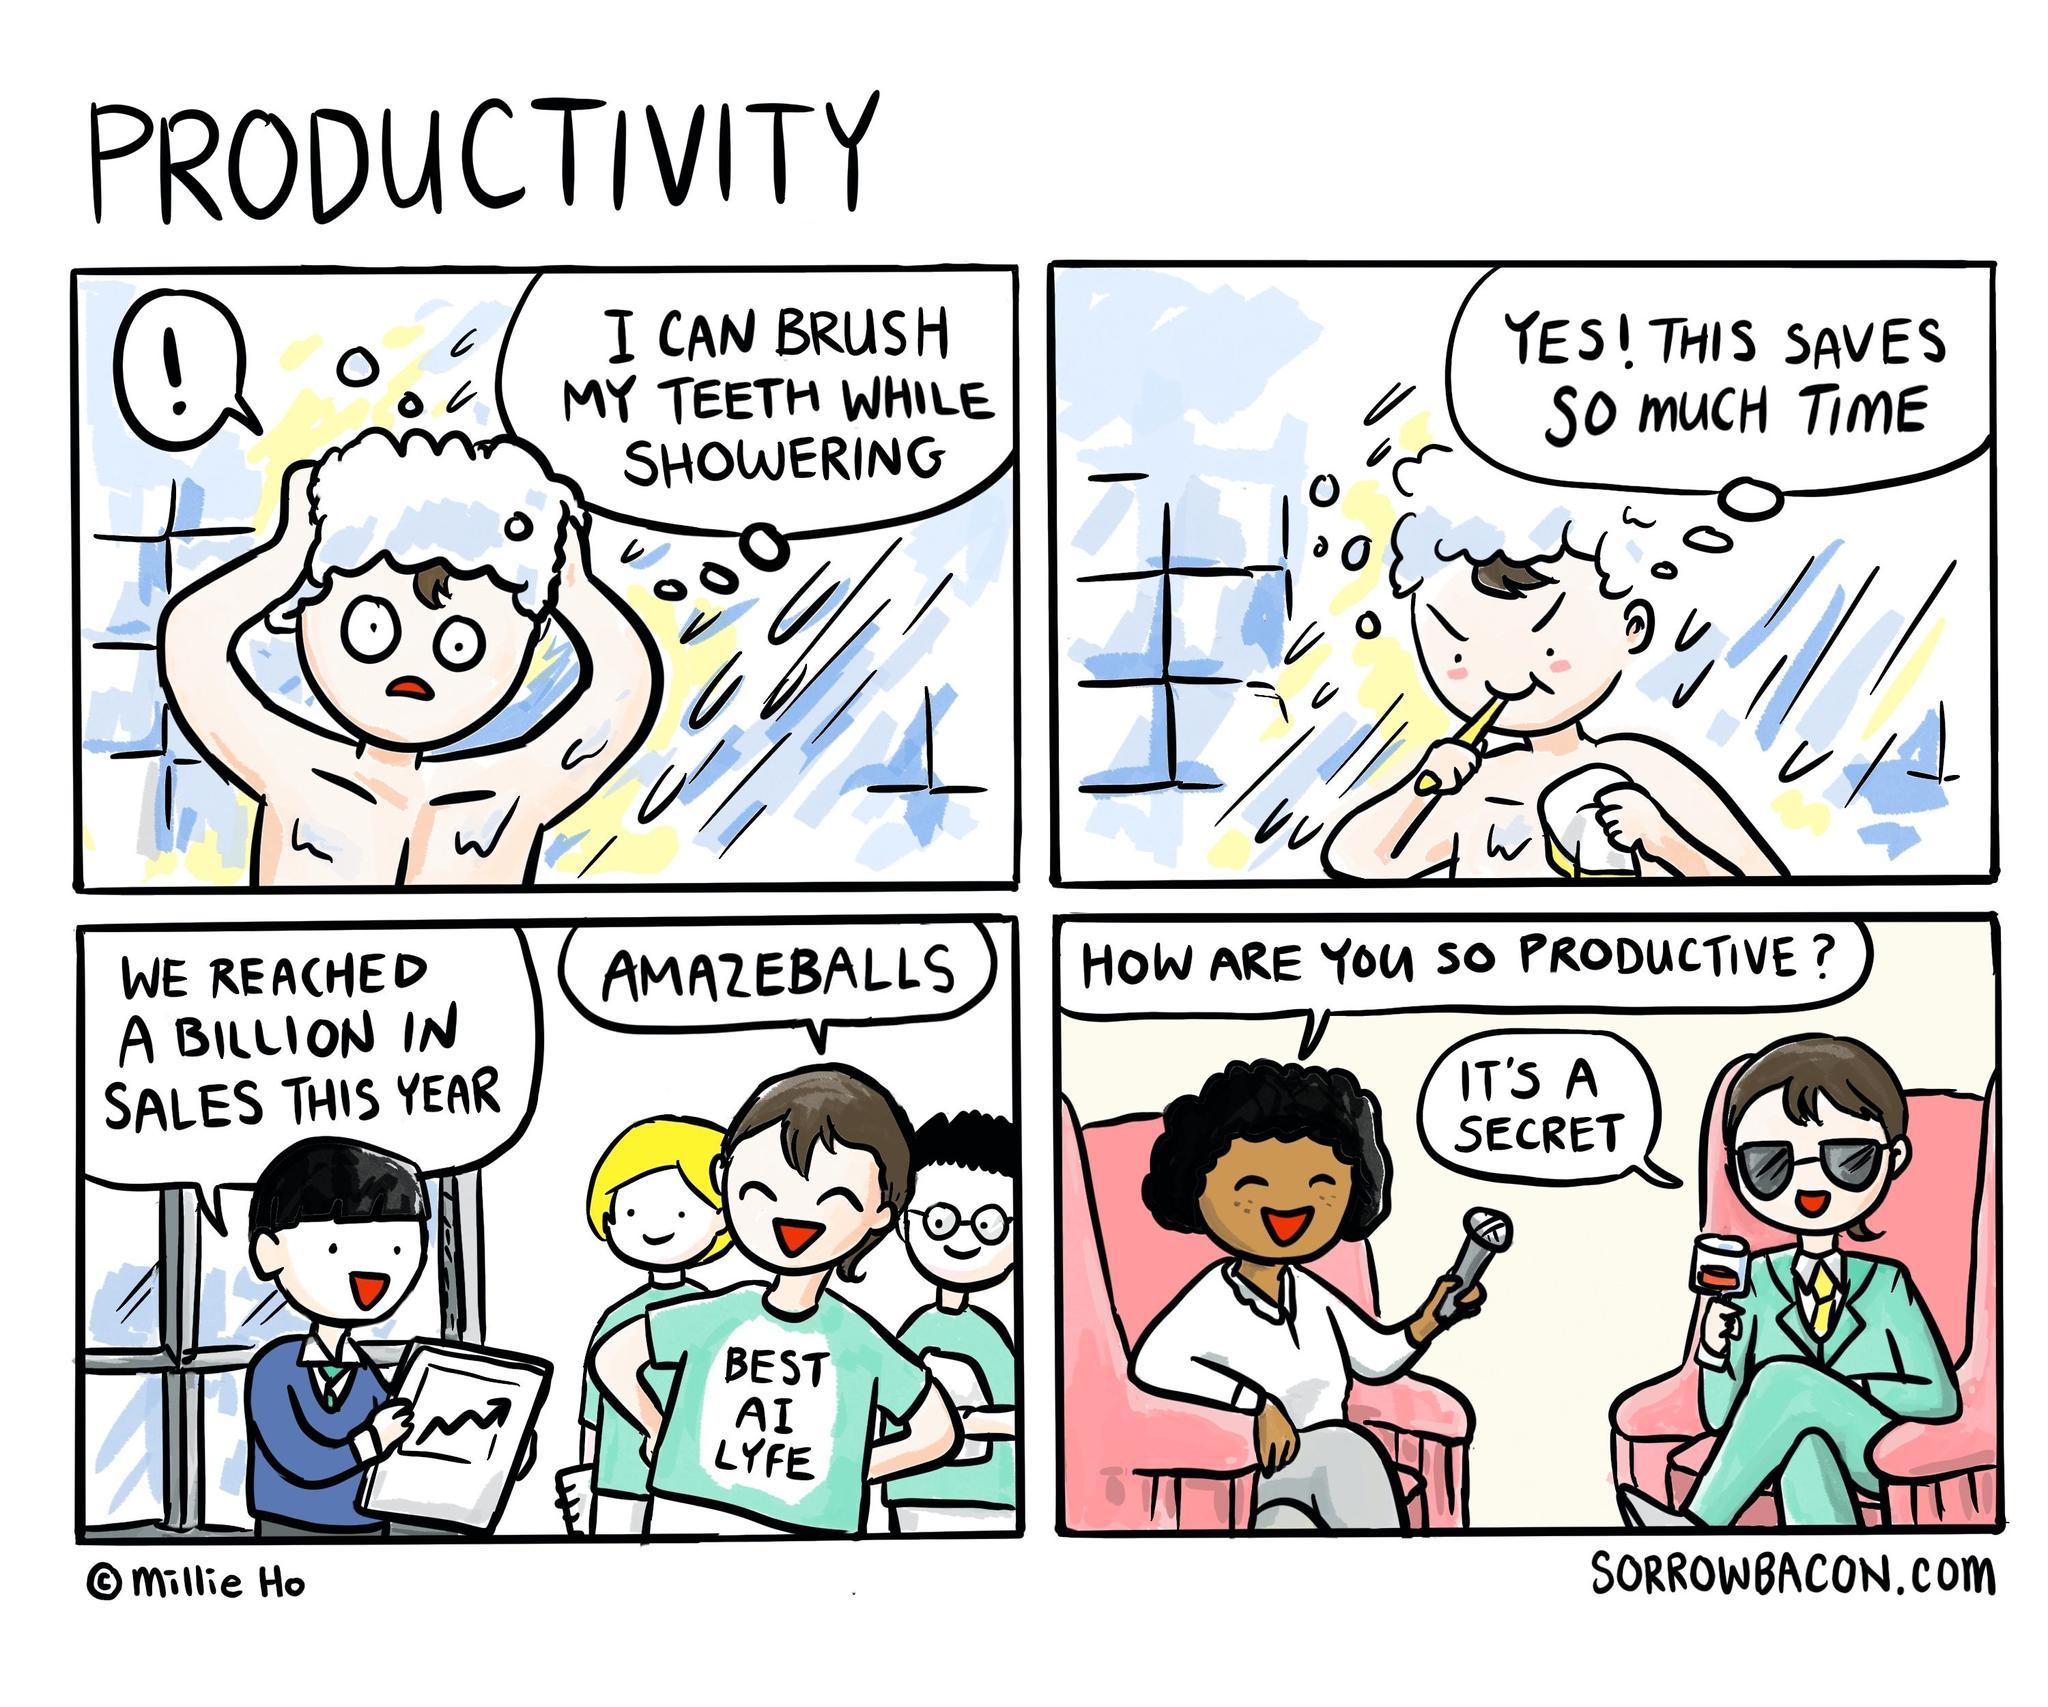 Productivity sorrowbacon comic